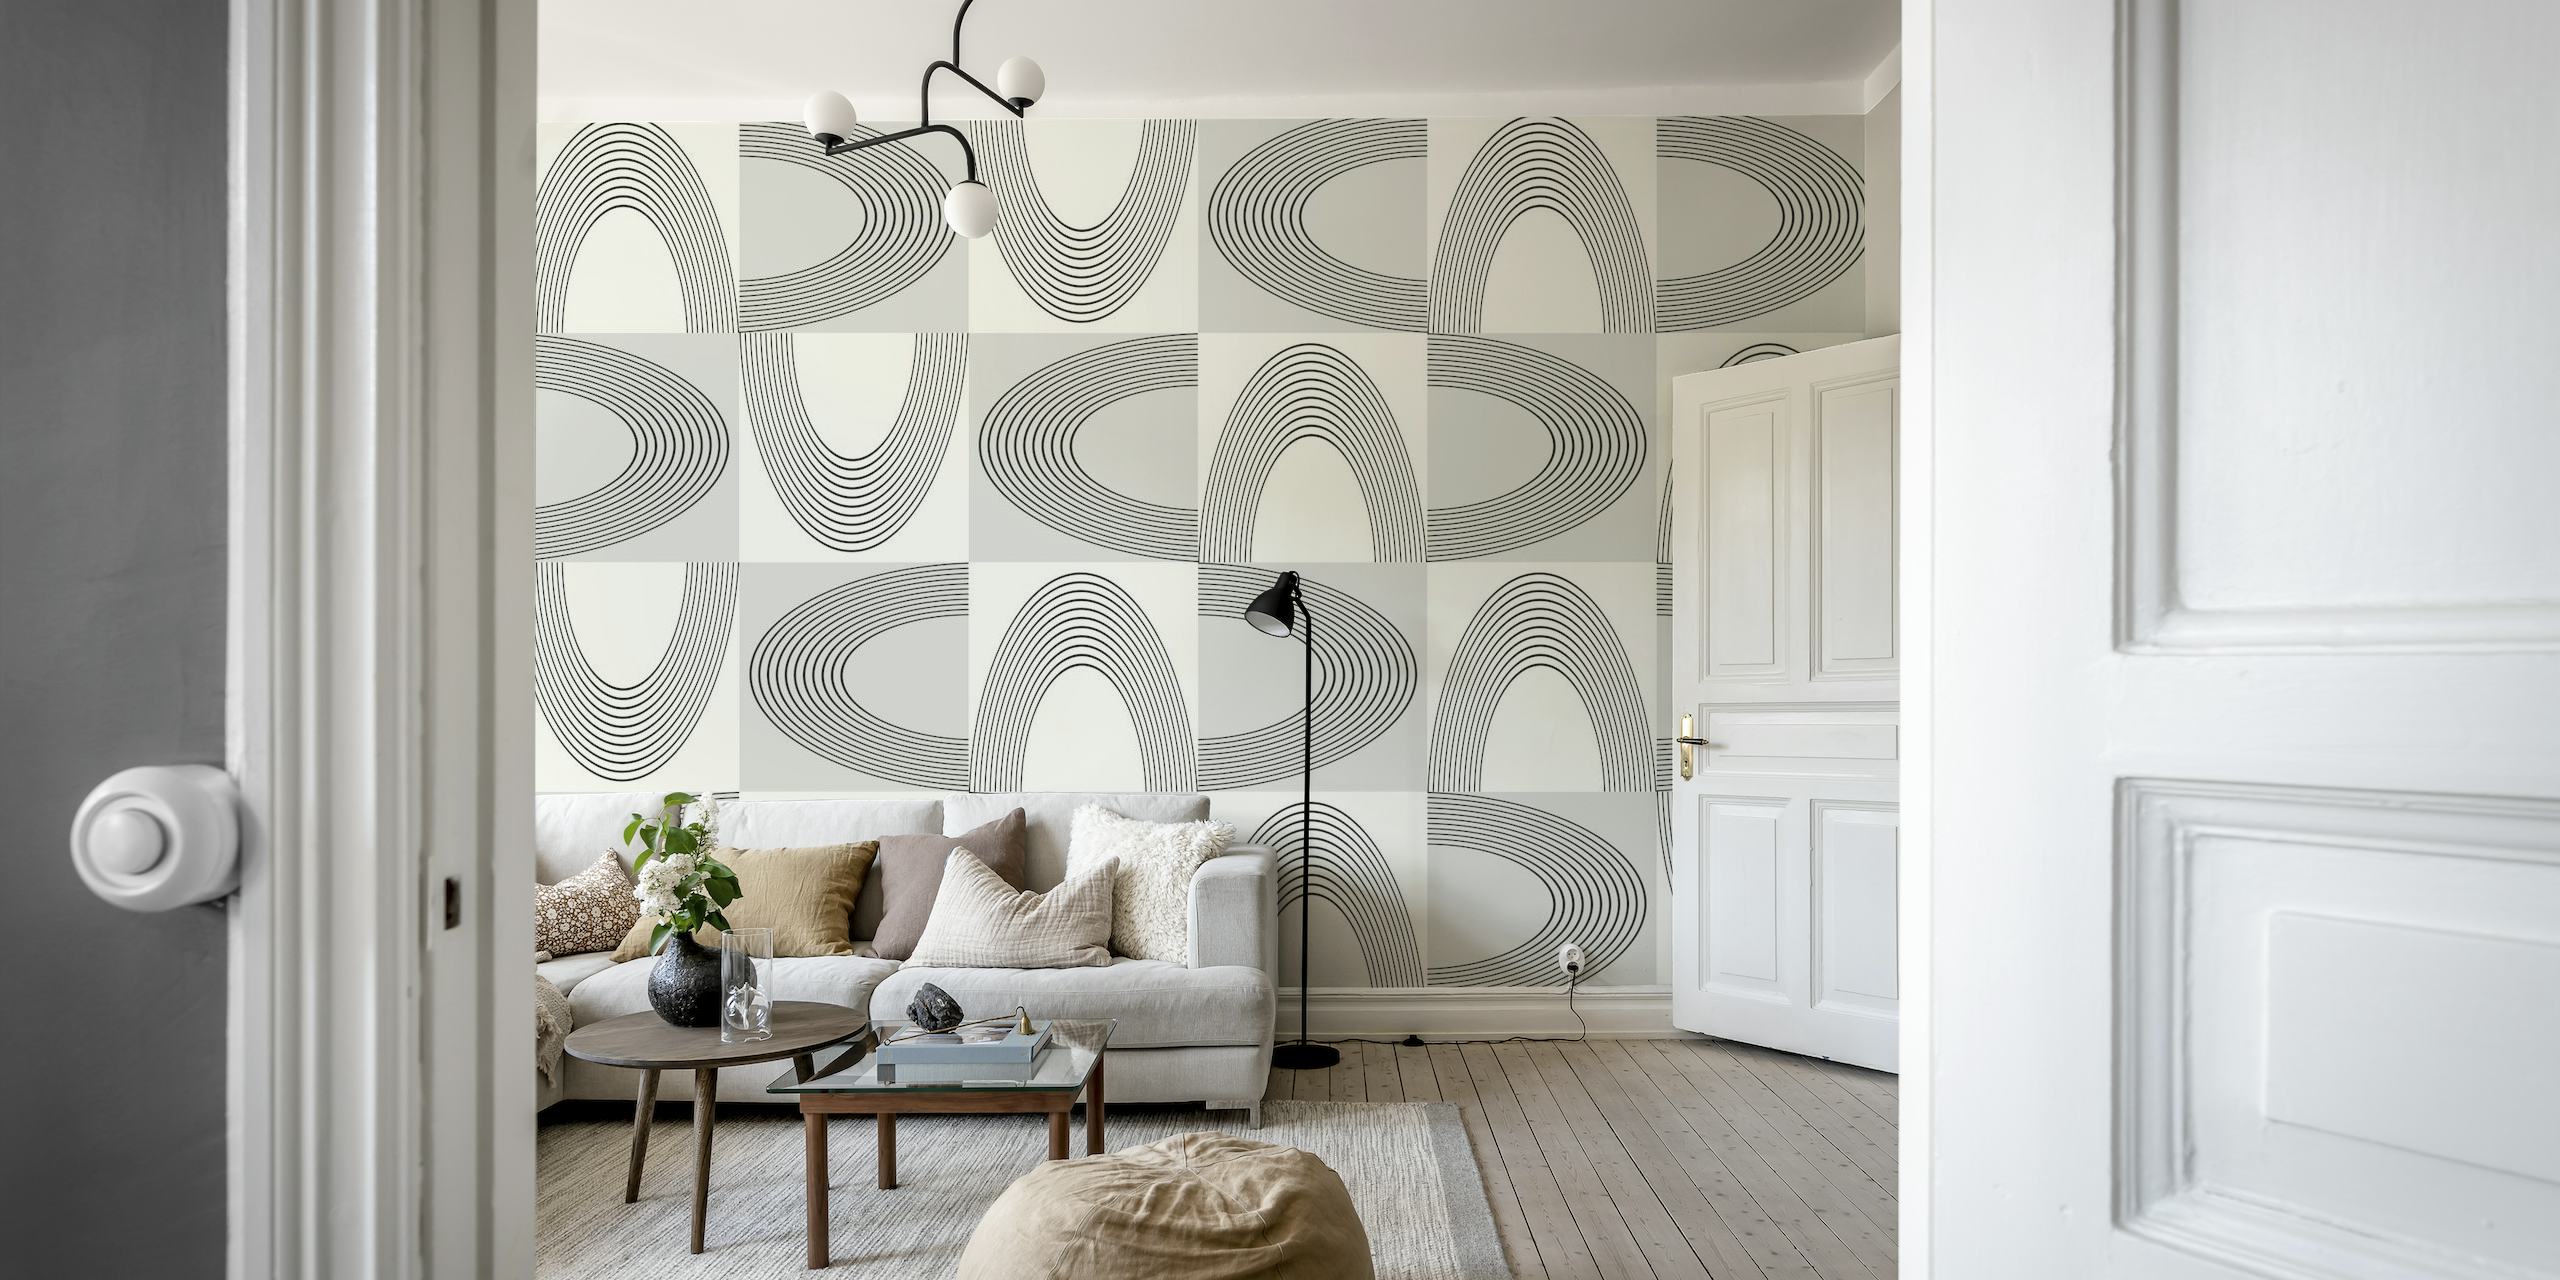 Abstraktes geometrisches Vintage-Wandbild mit ineinandergreifenden Formen in Grau und gebrochenem Weiß